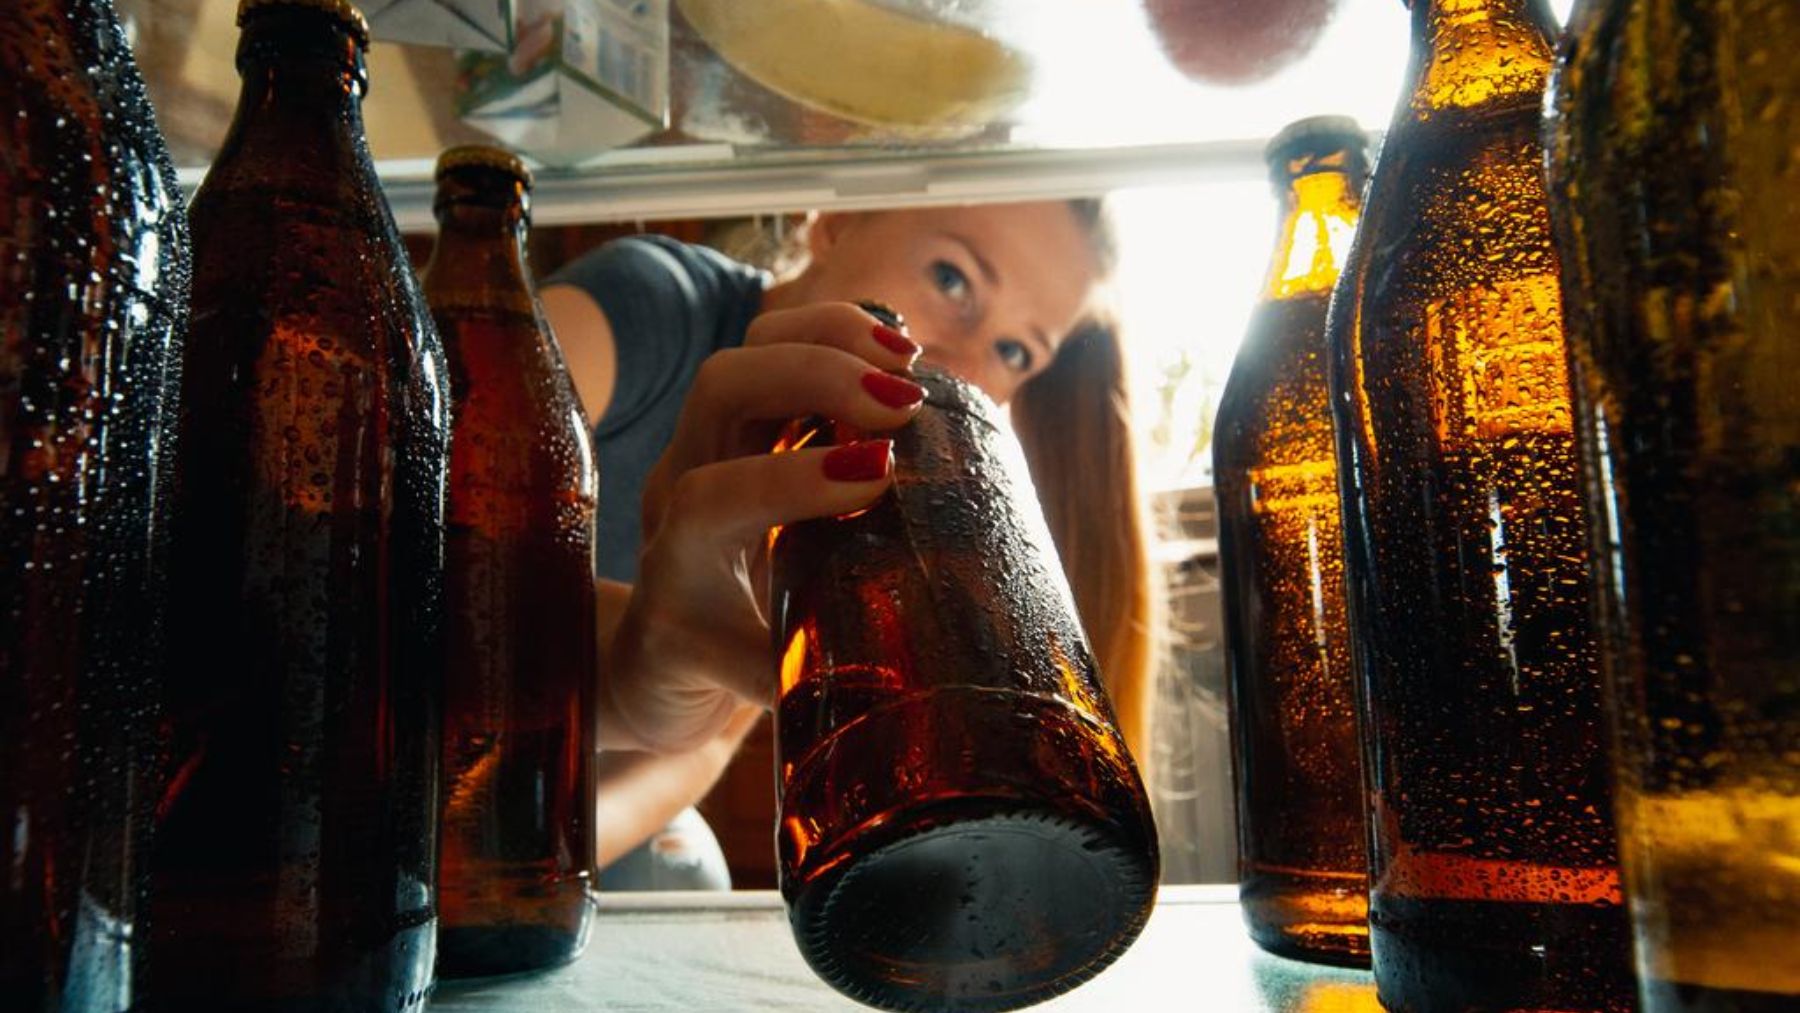 Beber cerveza y adelgazar es posible gracias a estas marcas